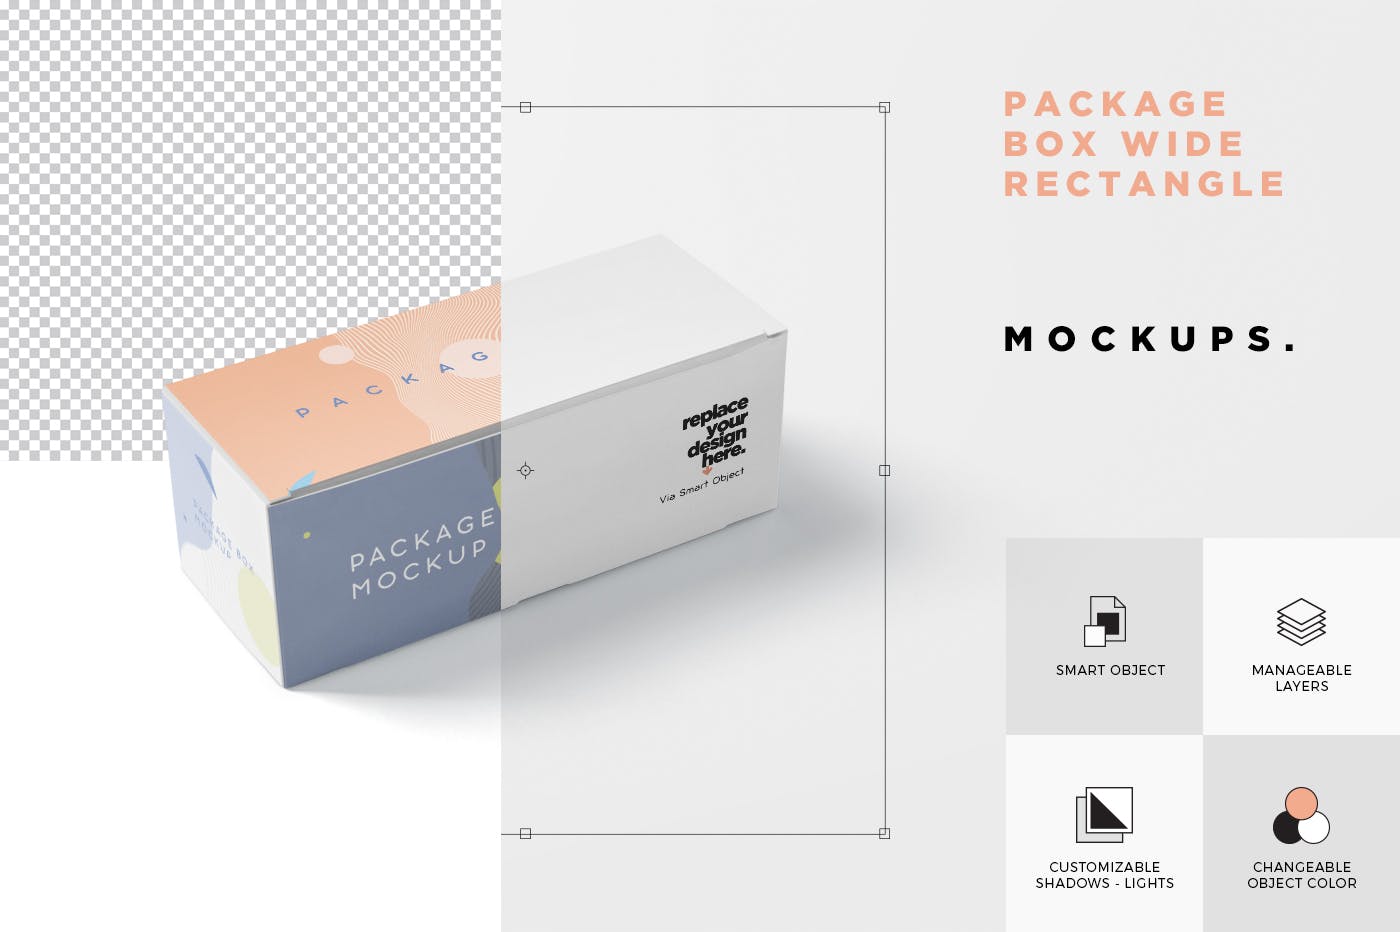 宽矩形包装盒外观设计效果图蚂蚁素材精选 Package Box Mock-Up Set – Wide Rectangle插图(6)